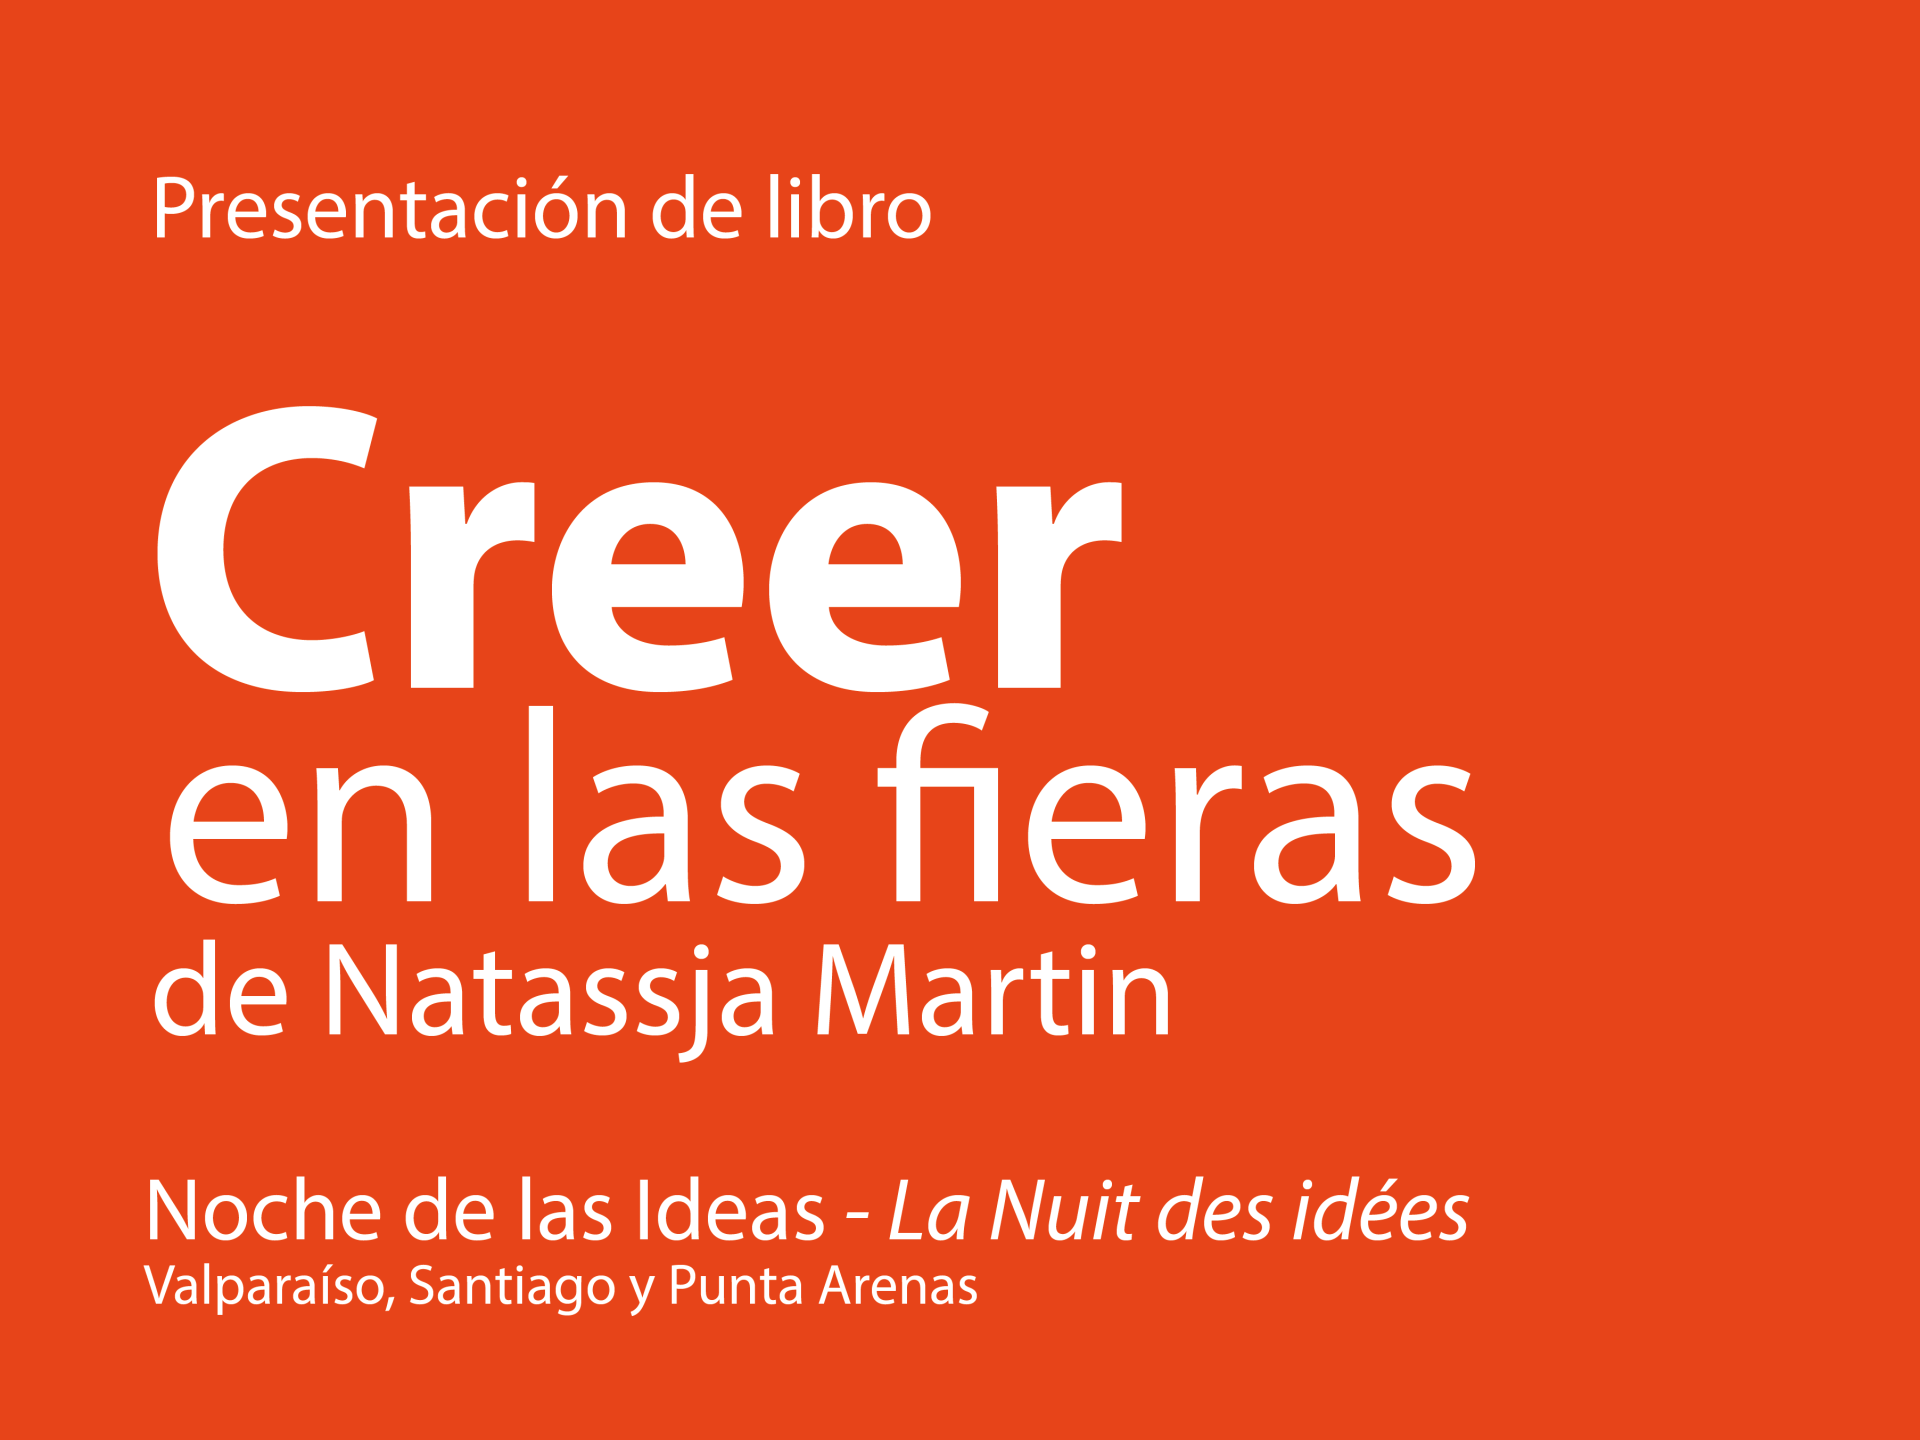 Presentación del libro Creer en las fieras de Natassja Martin